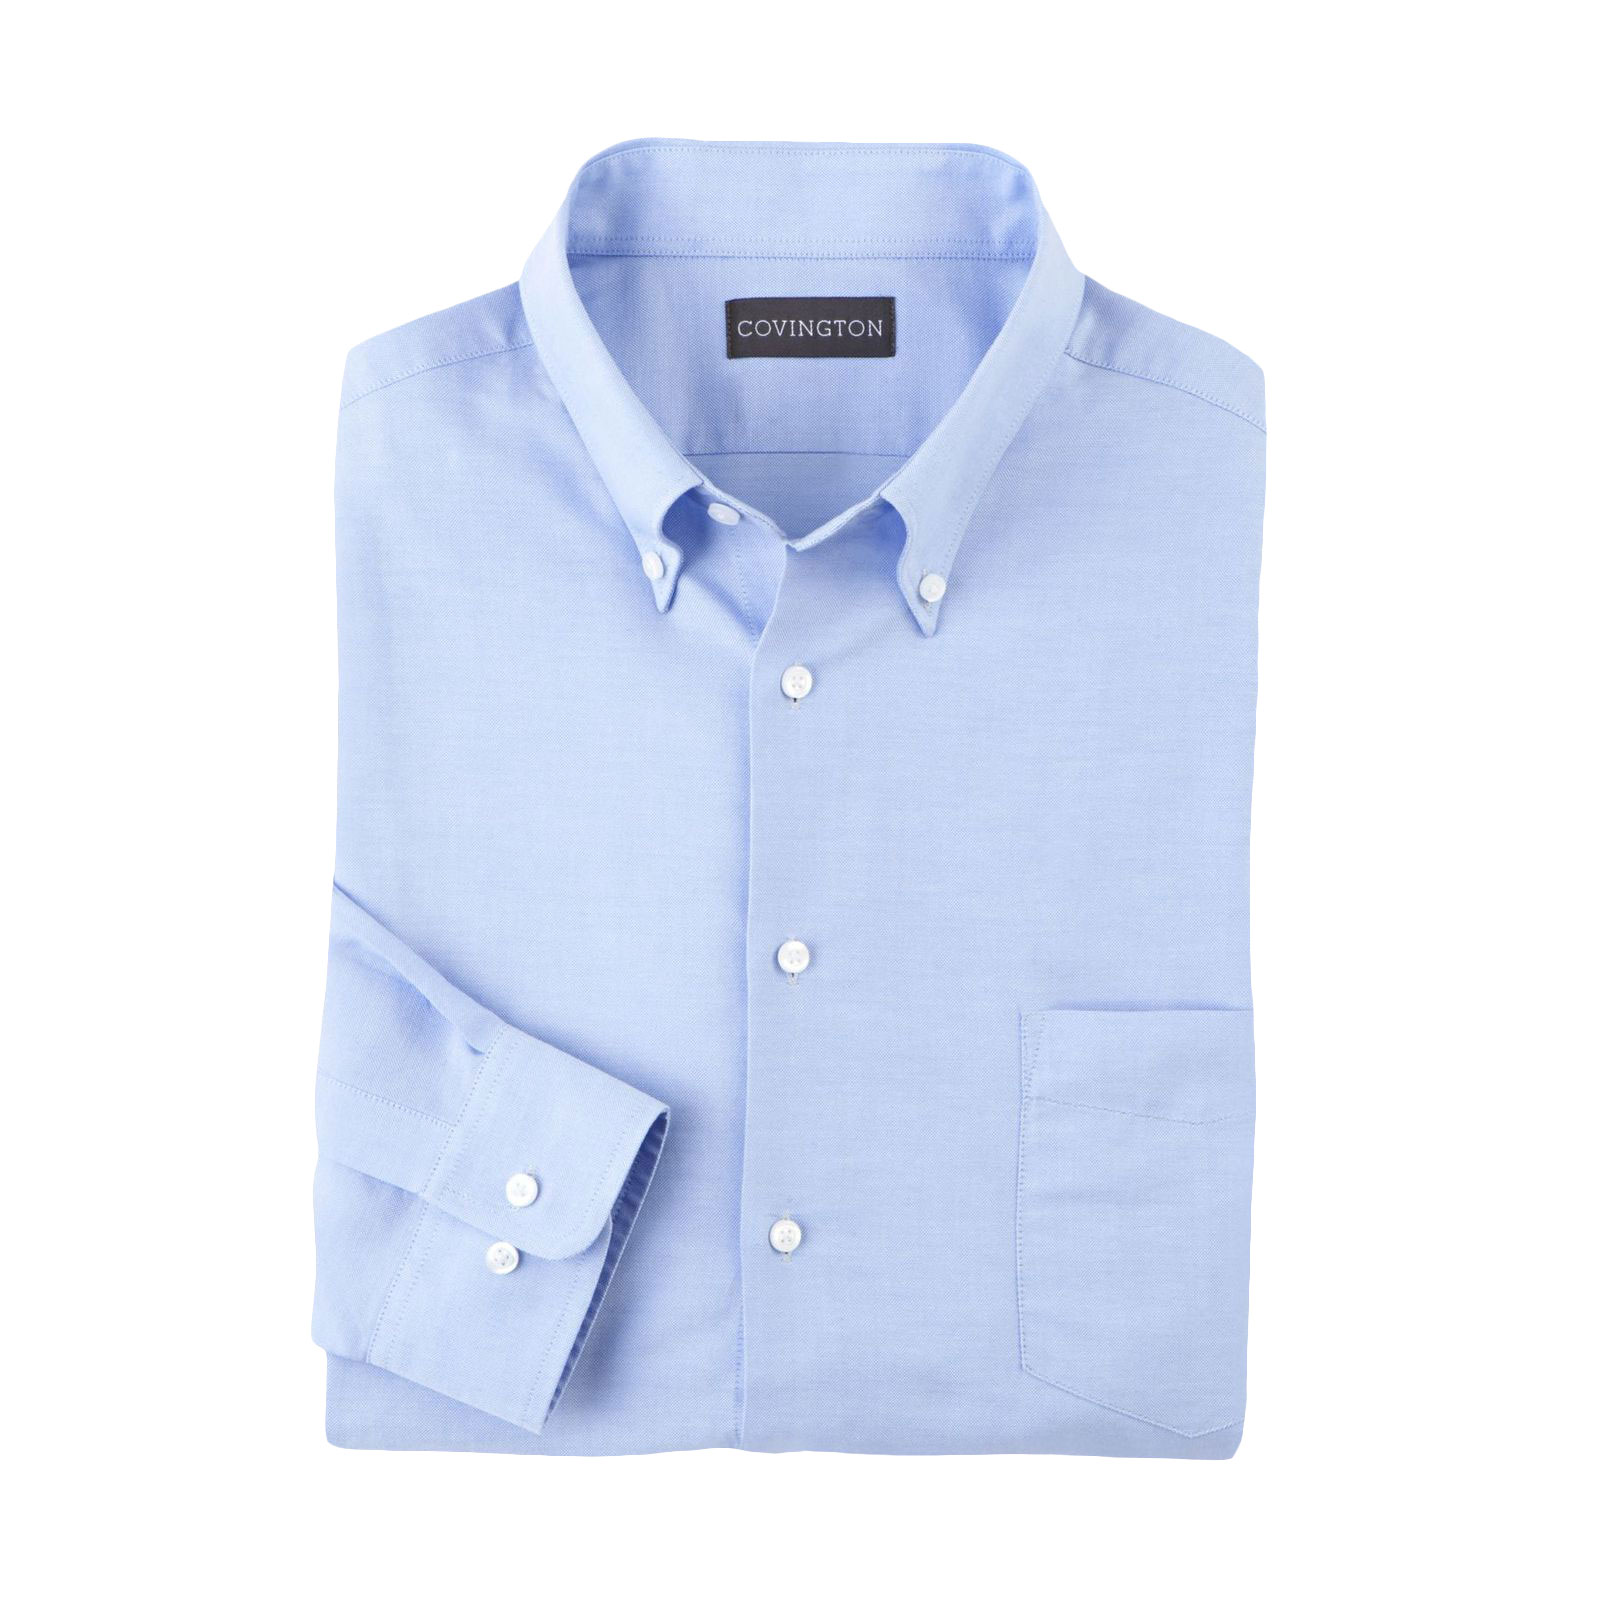 Covington Men's Classic Fit Oxford Dress Shirt | Shop Your Way: Online ...